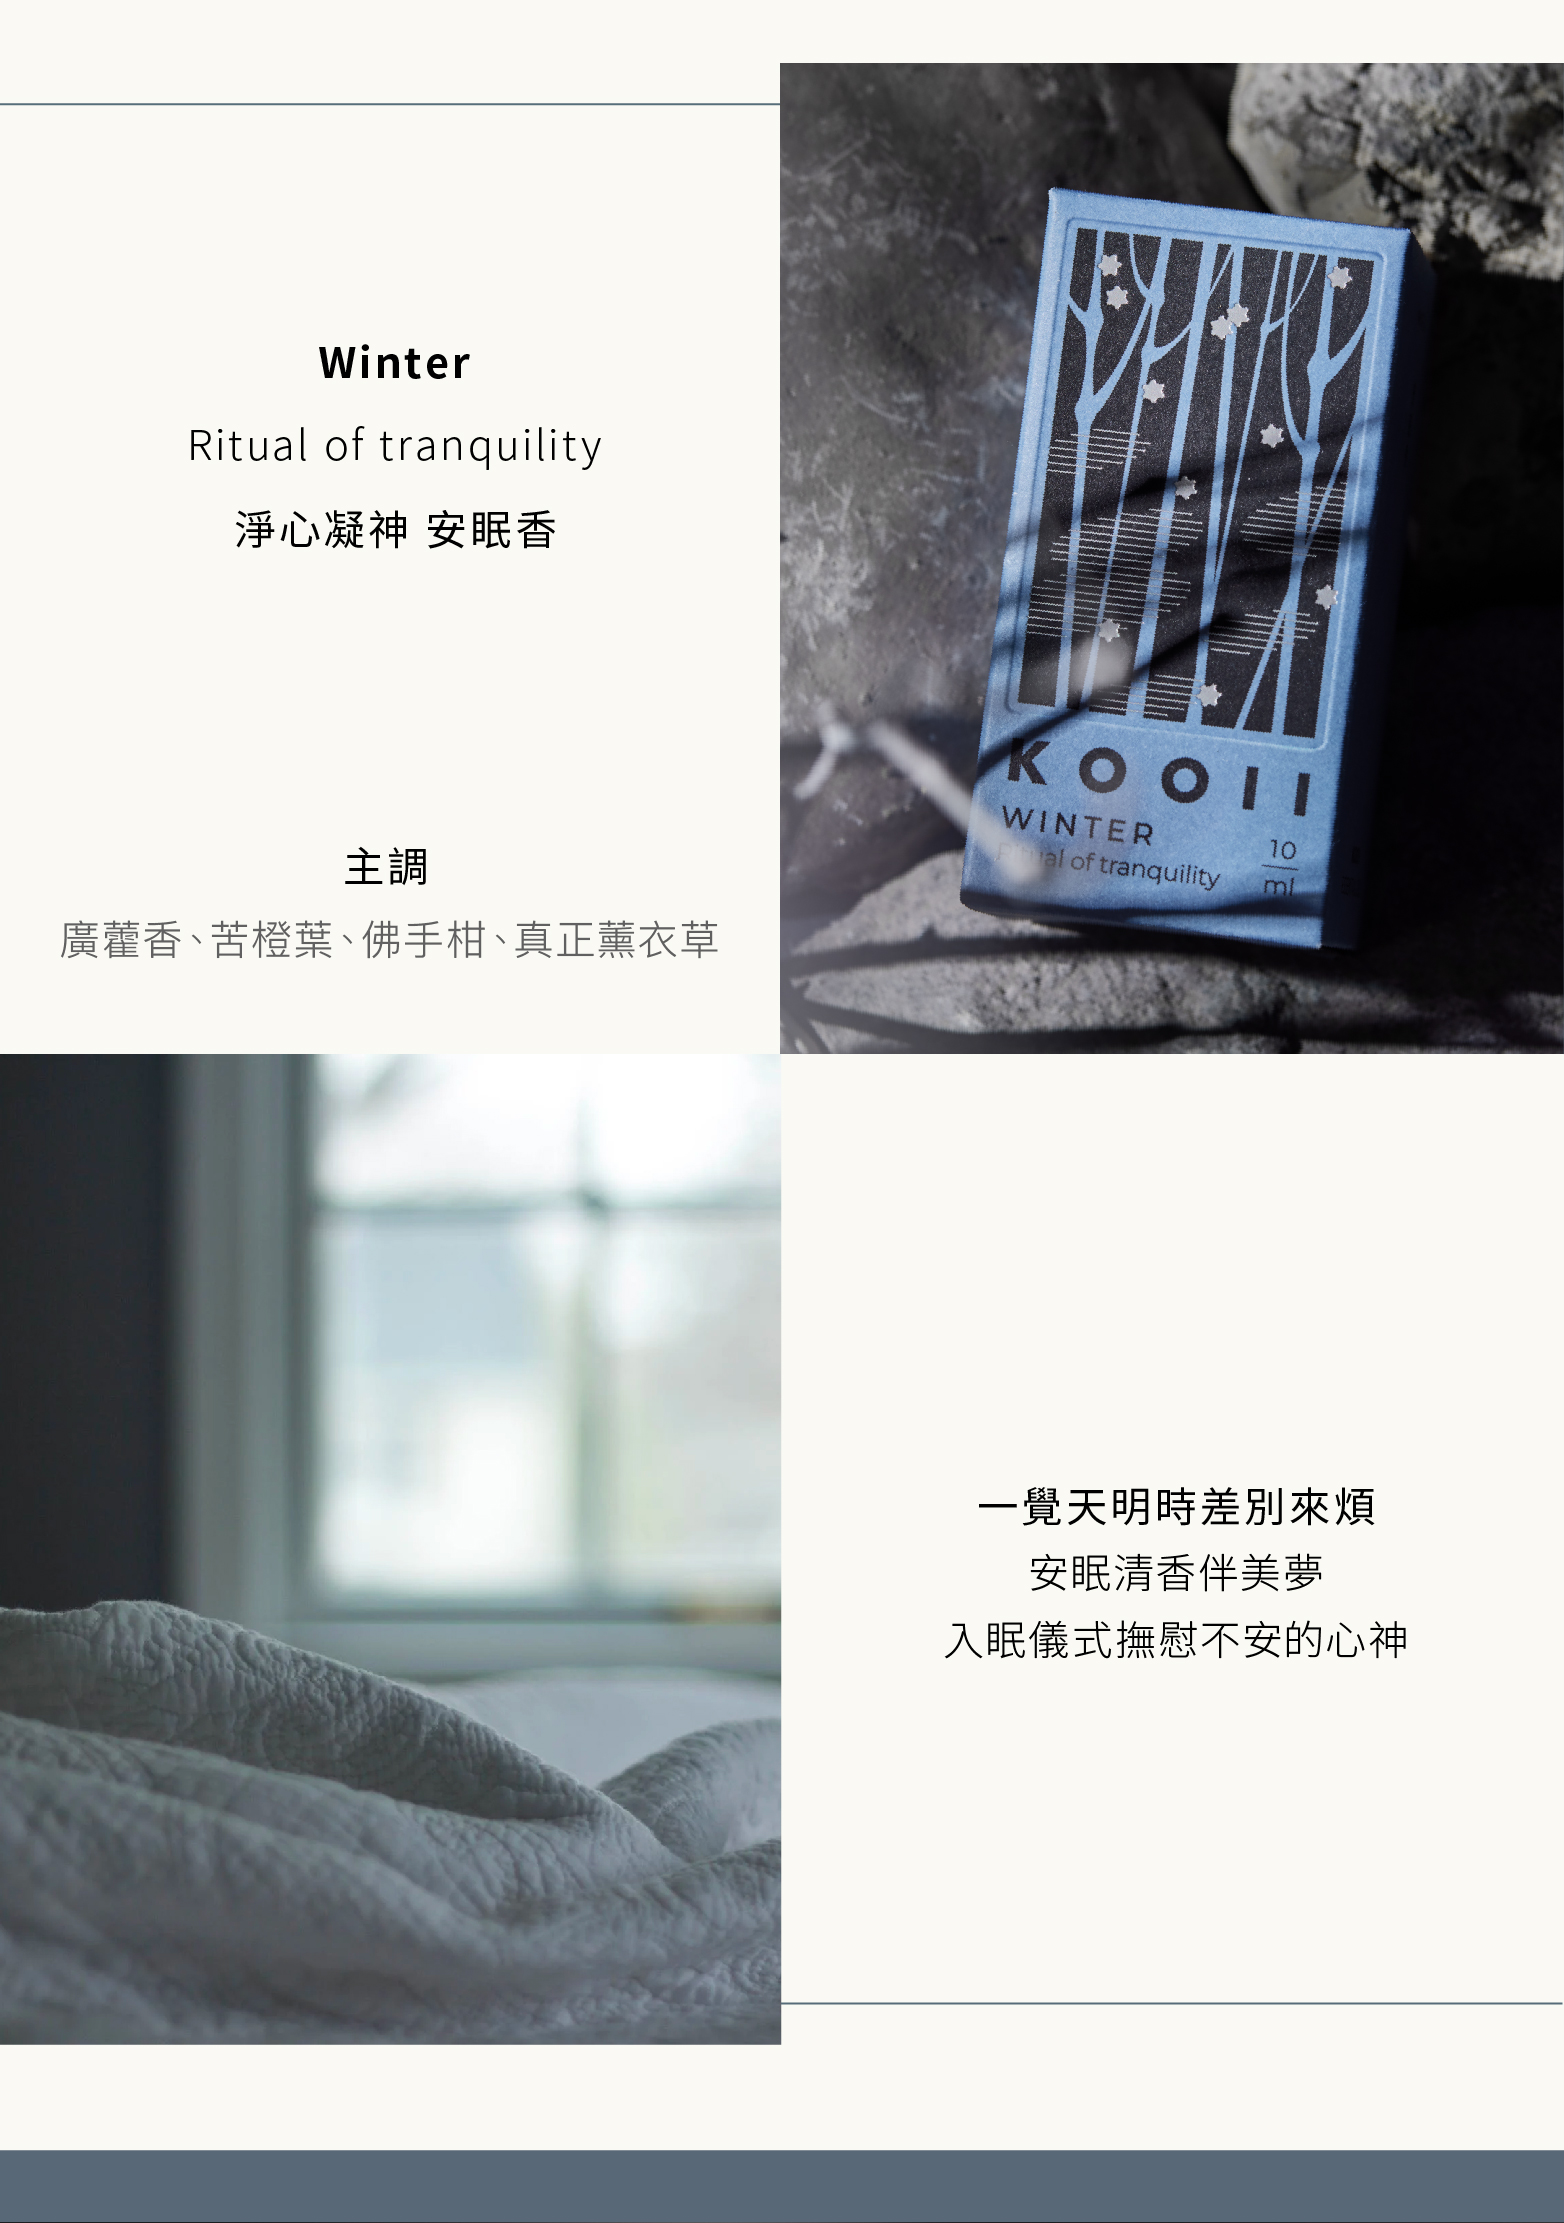 靜心凝神-安眠香(Winter)